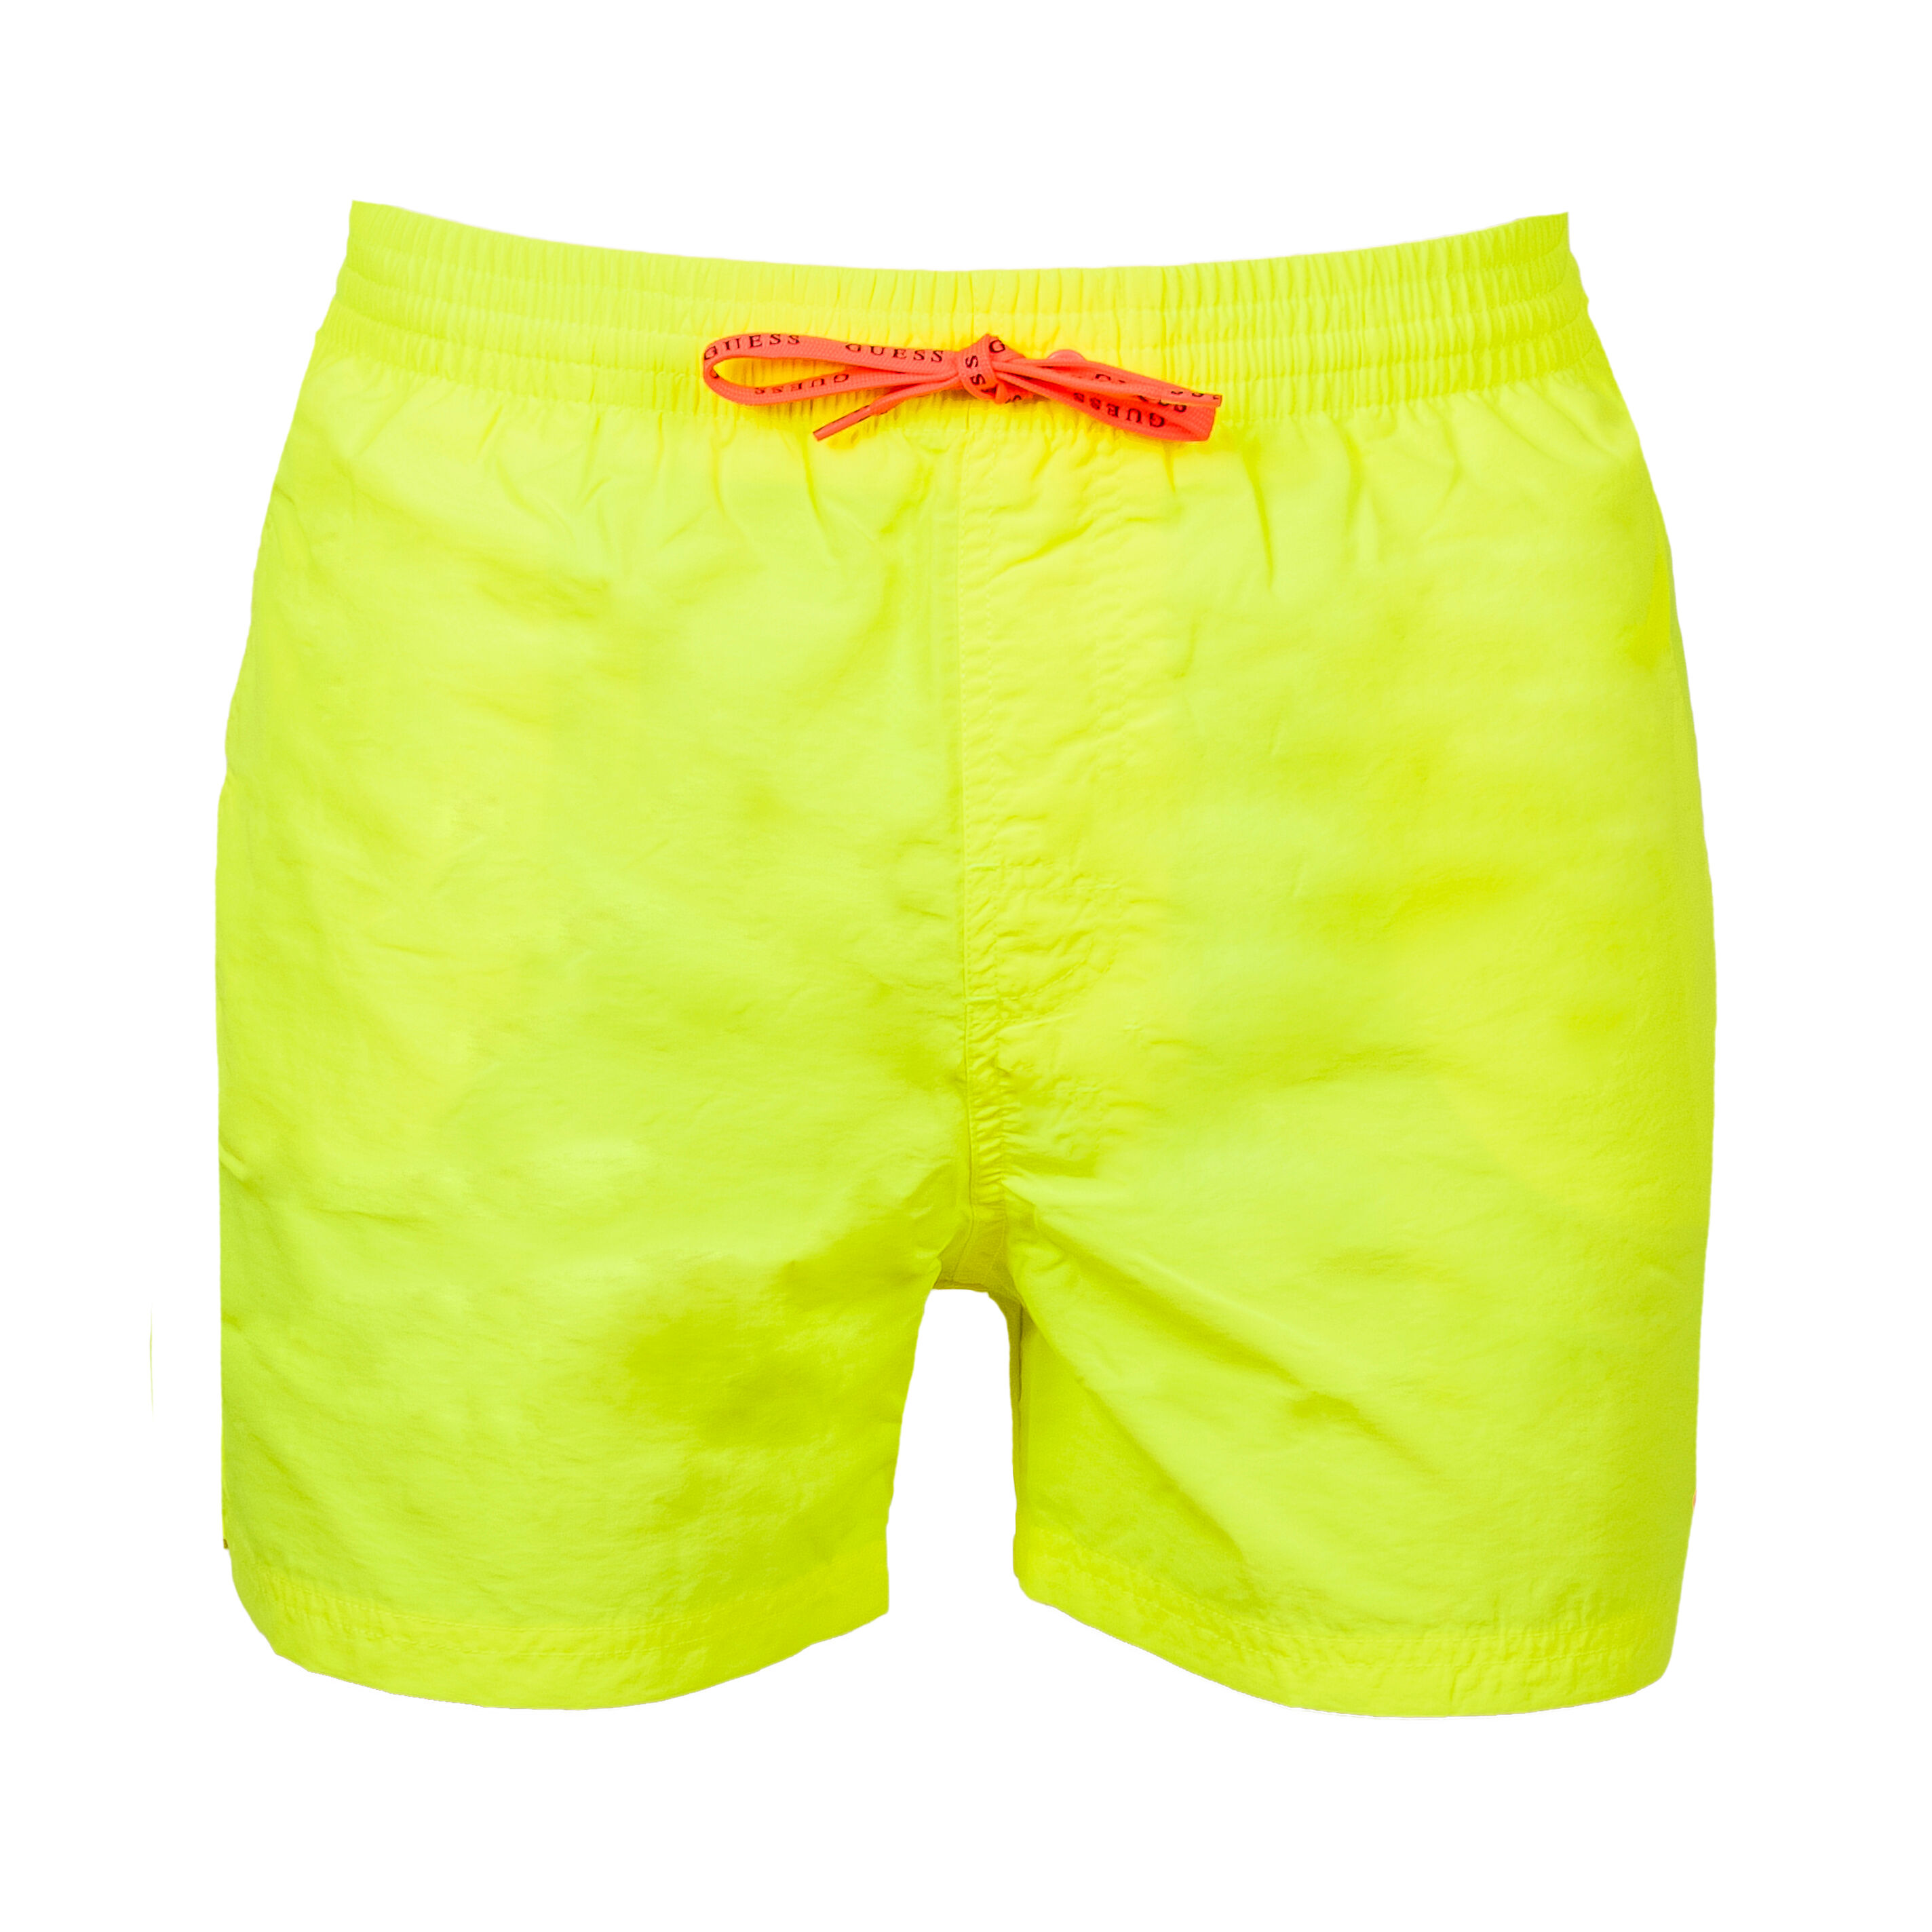 Guess Underwear Short de bain Guess Woven jaune fluo à logo rose - JAUNE FLUO -